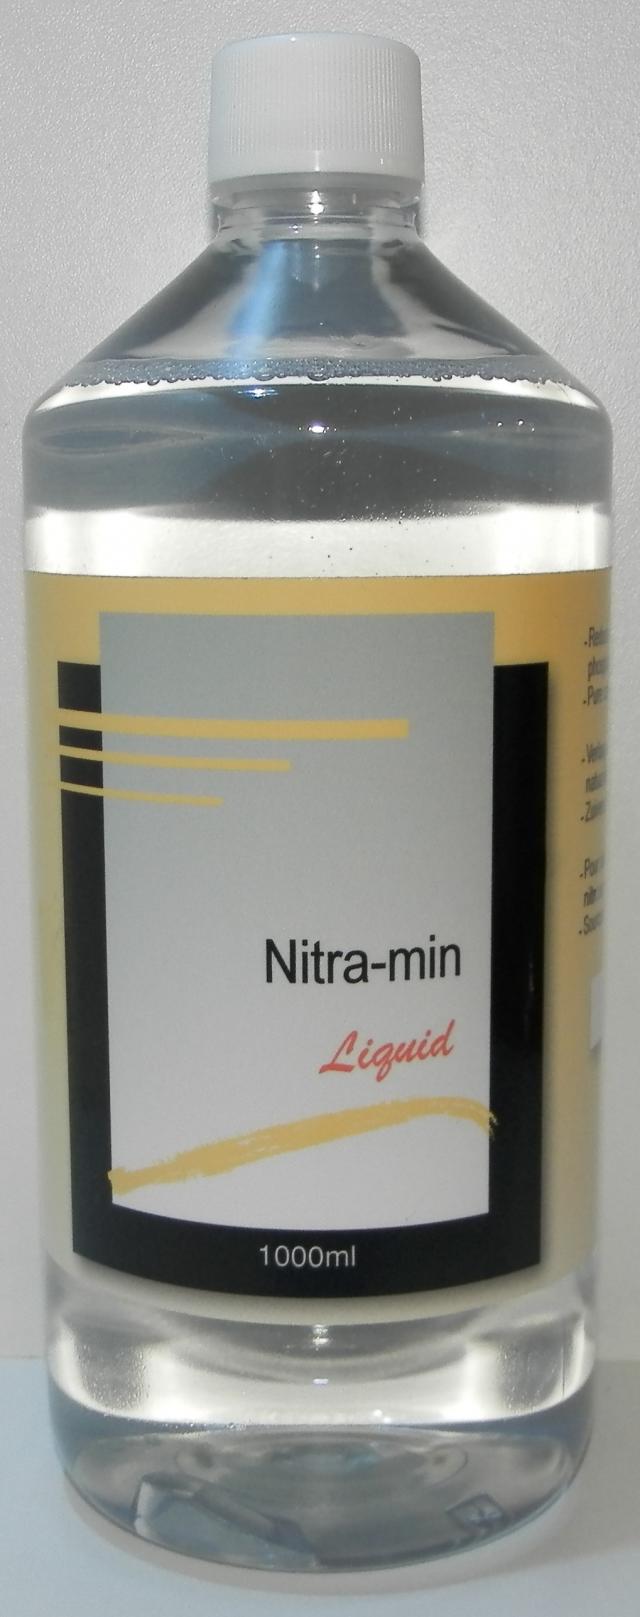 nitra-min liquid 1000ml